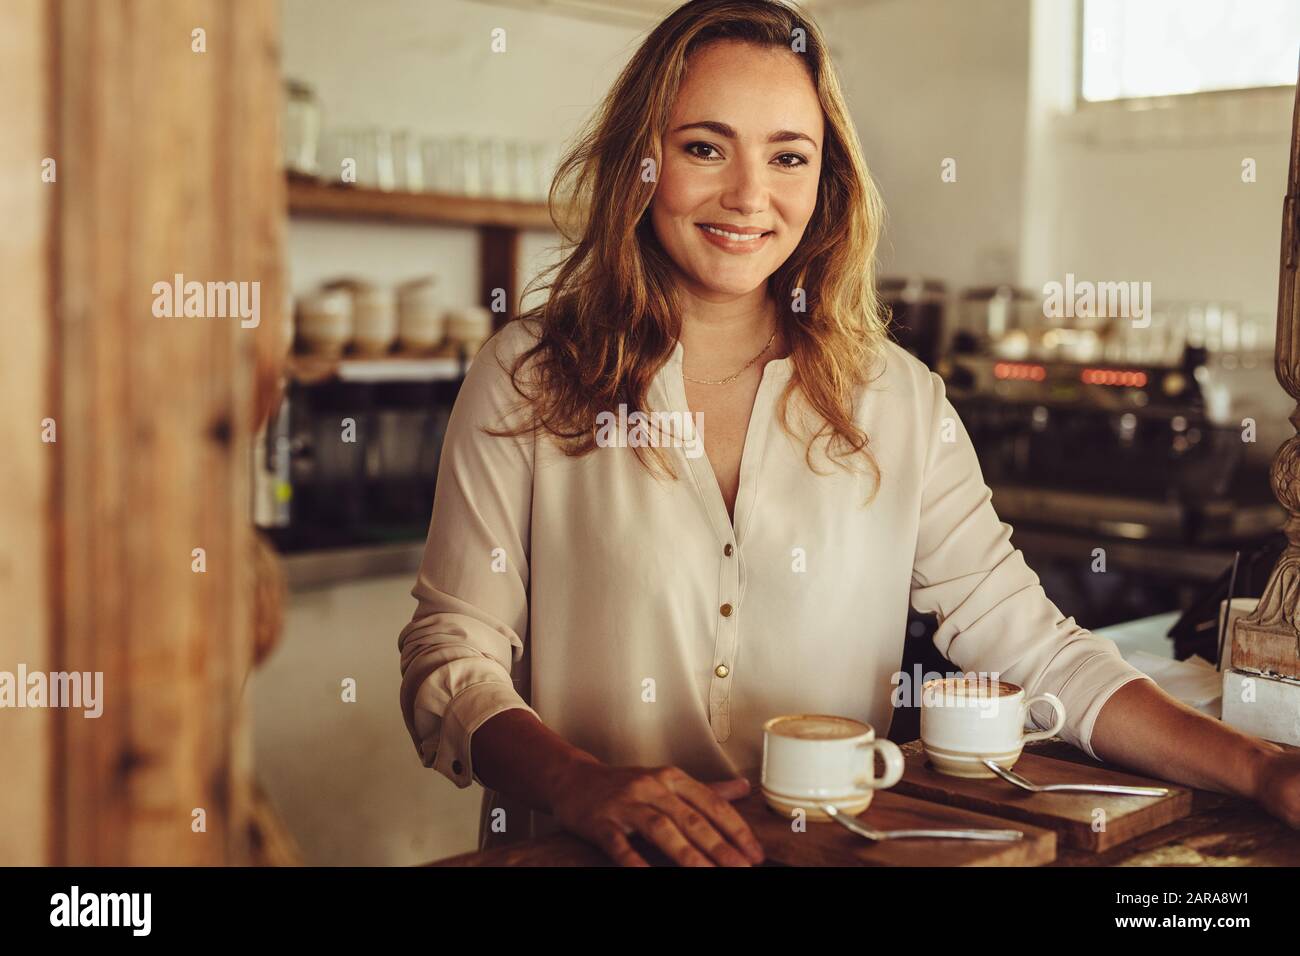 Ritratto di una giovane donna che lavora dietro il bancone di una caffetteria. Barista femminile sorridente che serve il caffè. Foto Stock